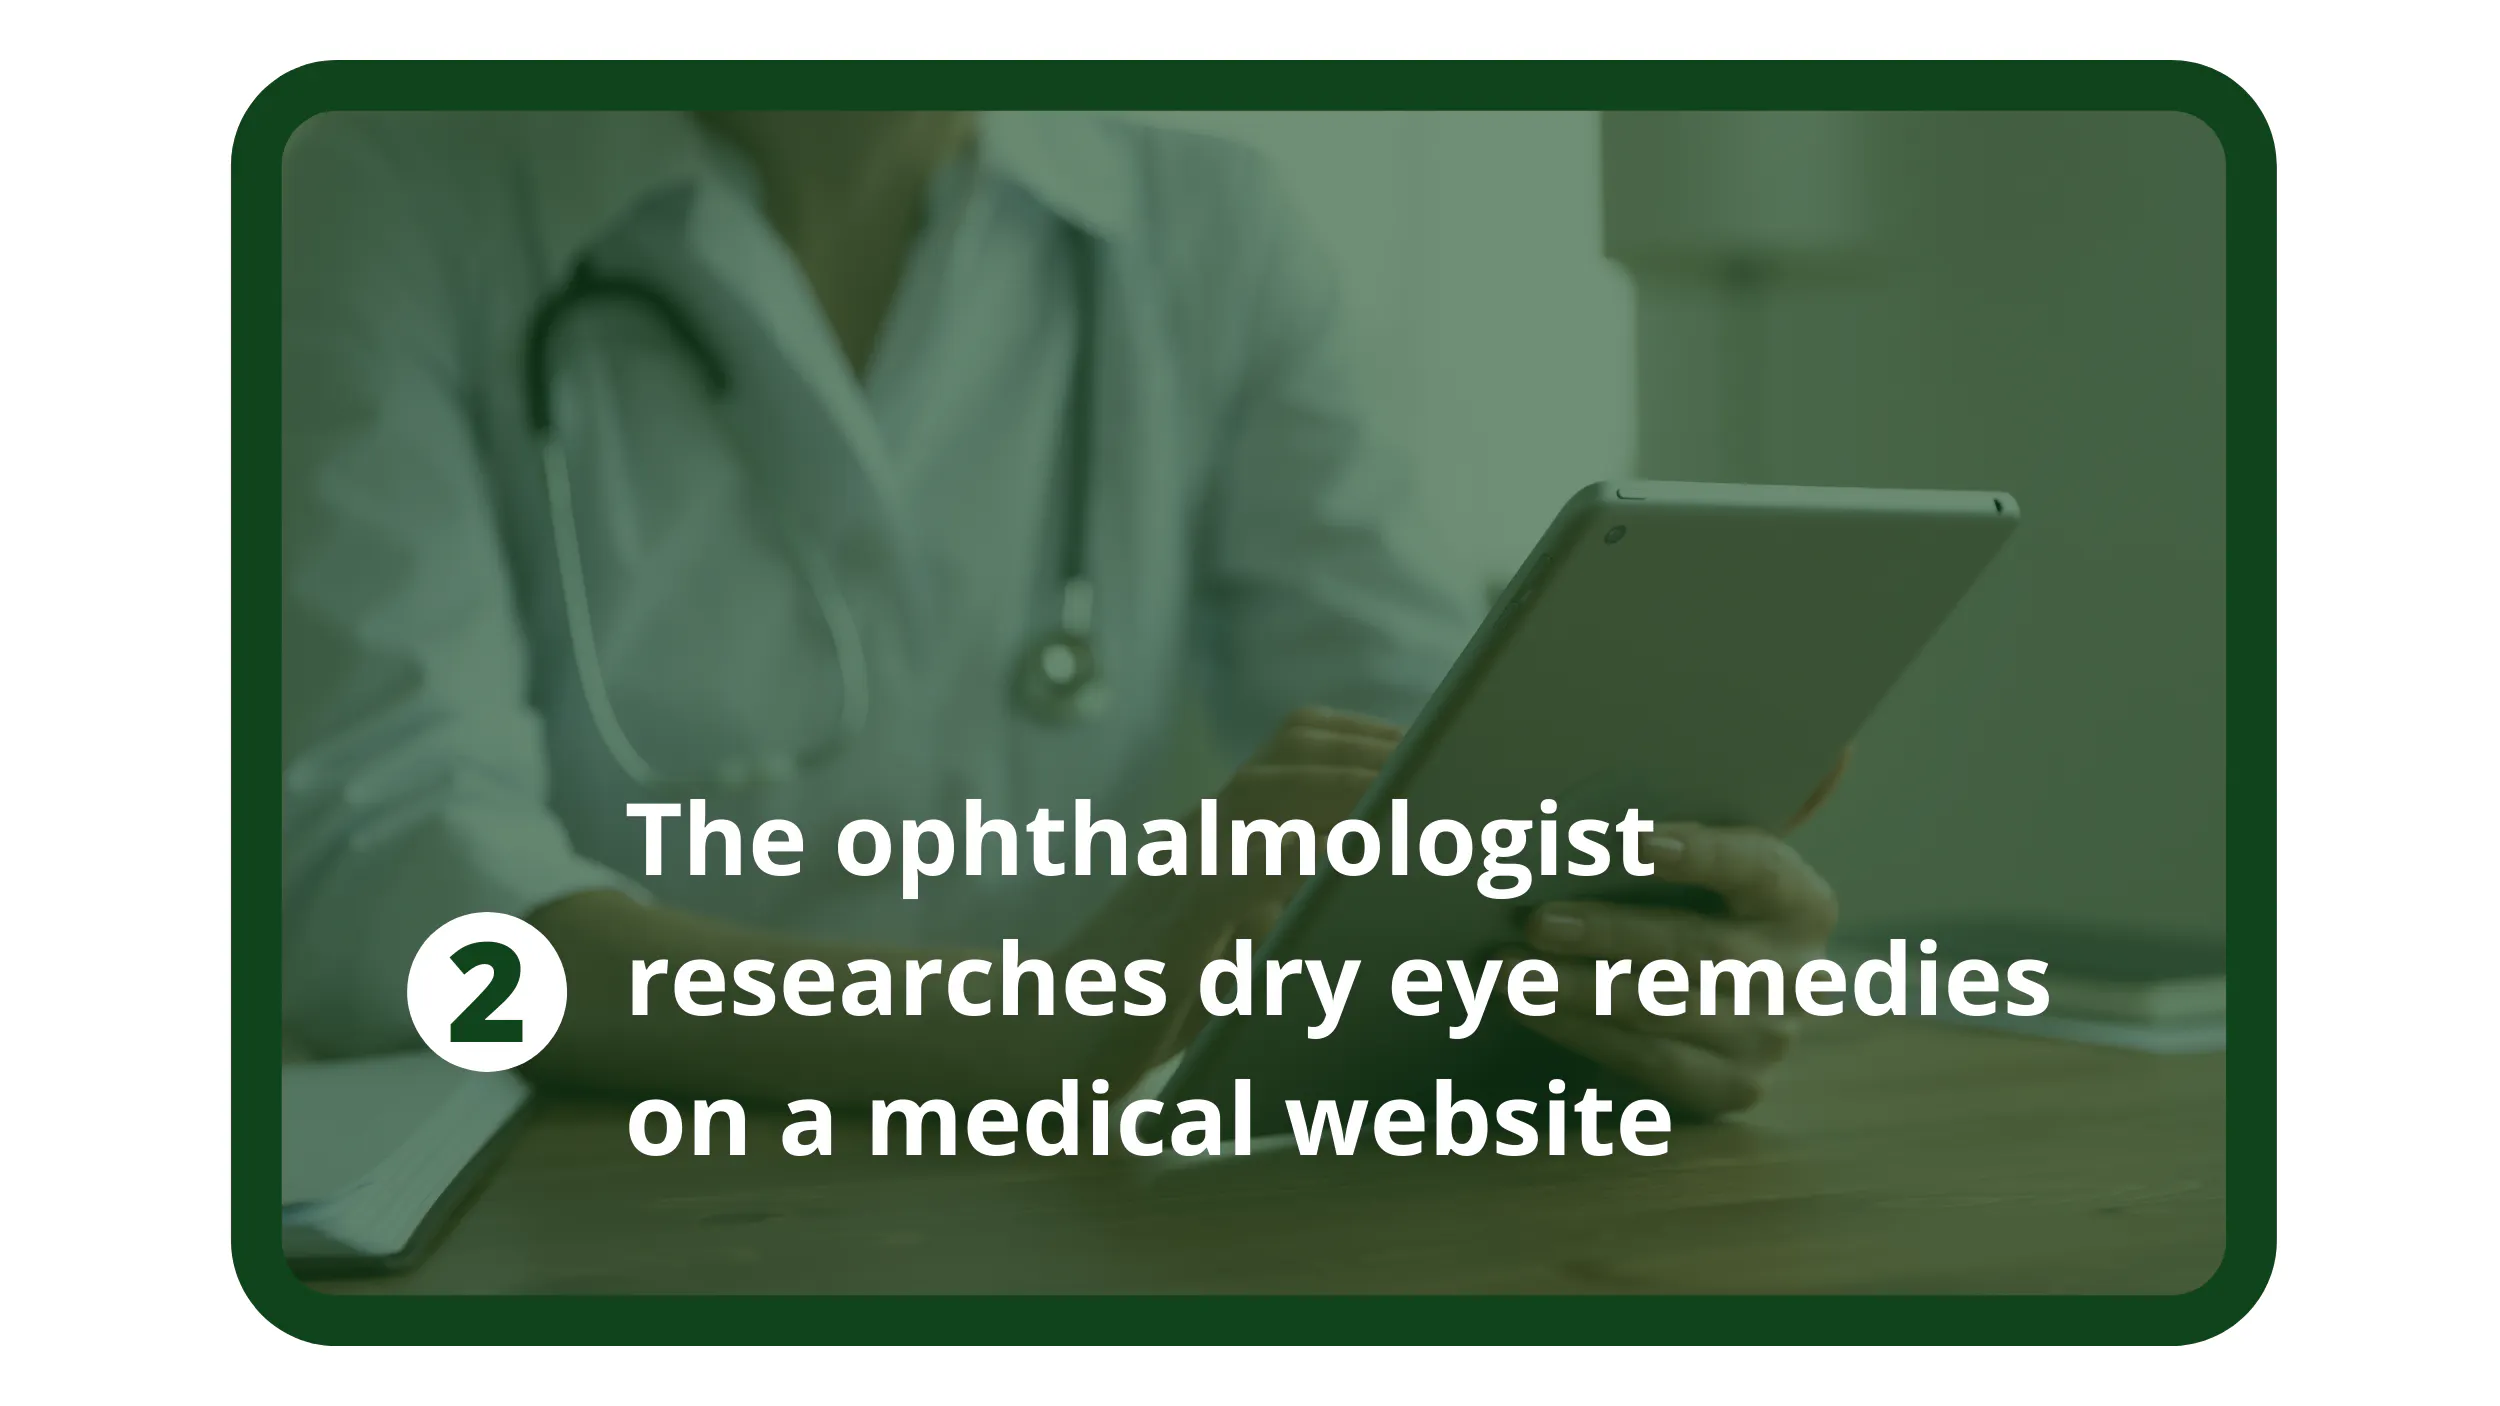 Der Ophthalmologe recherchiert auf einer medizinischen Website über Mittel gegen trockene Augen